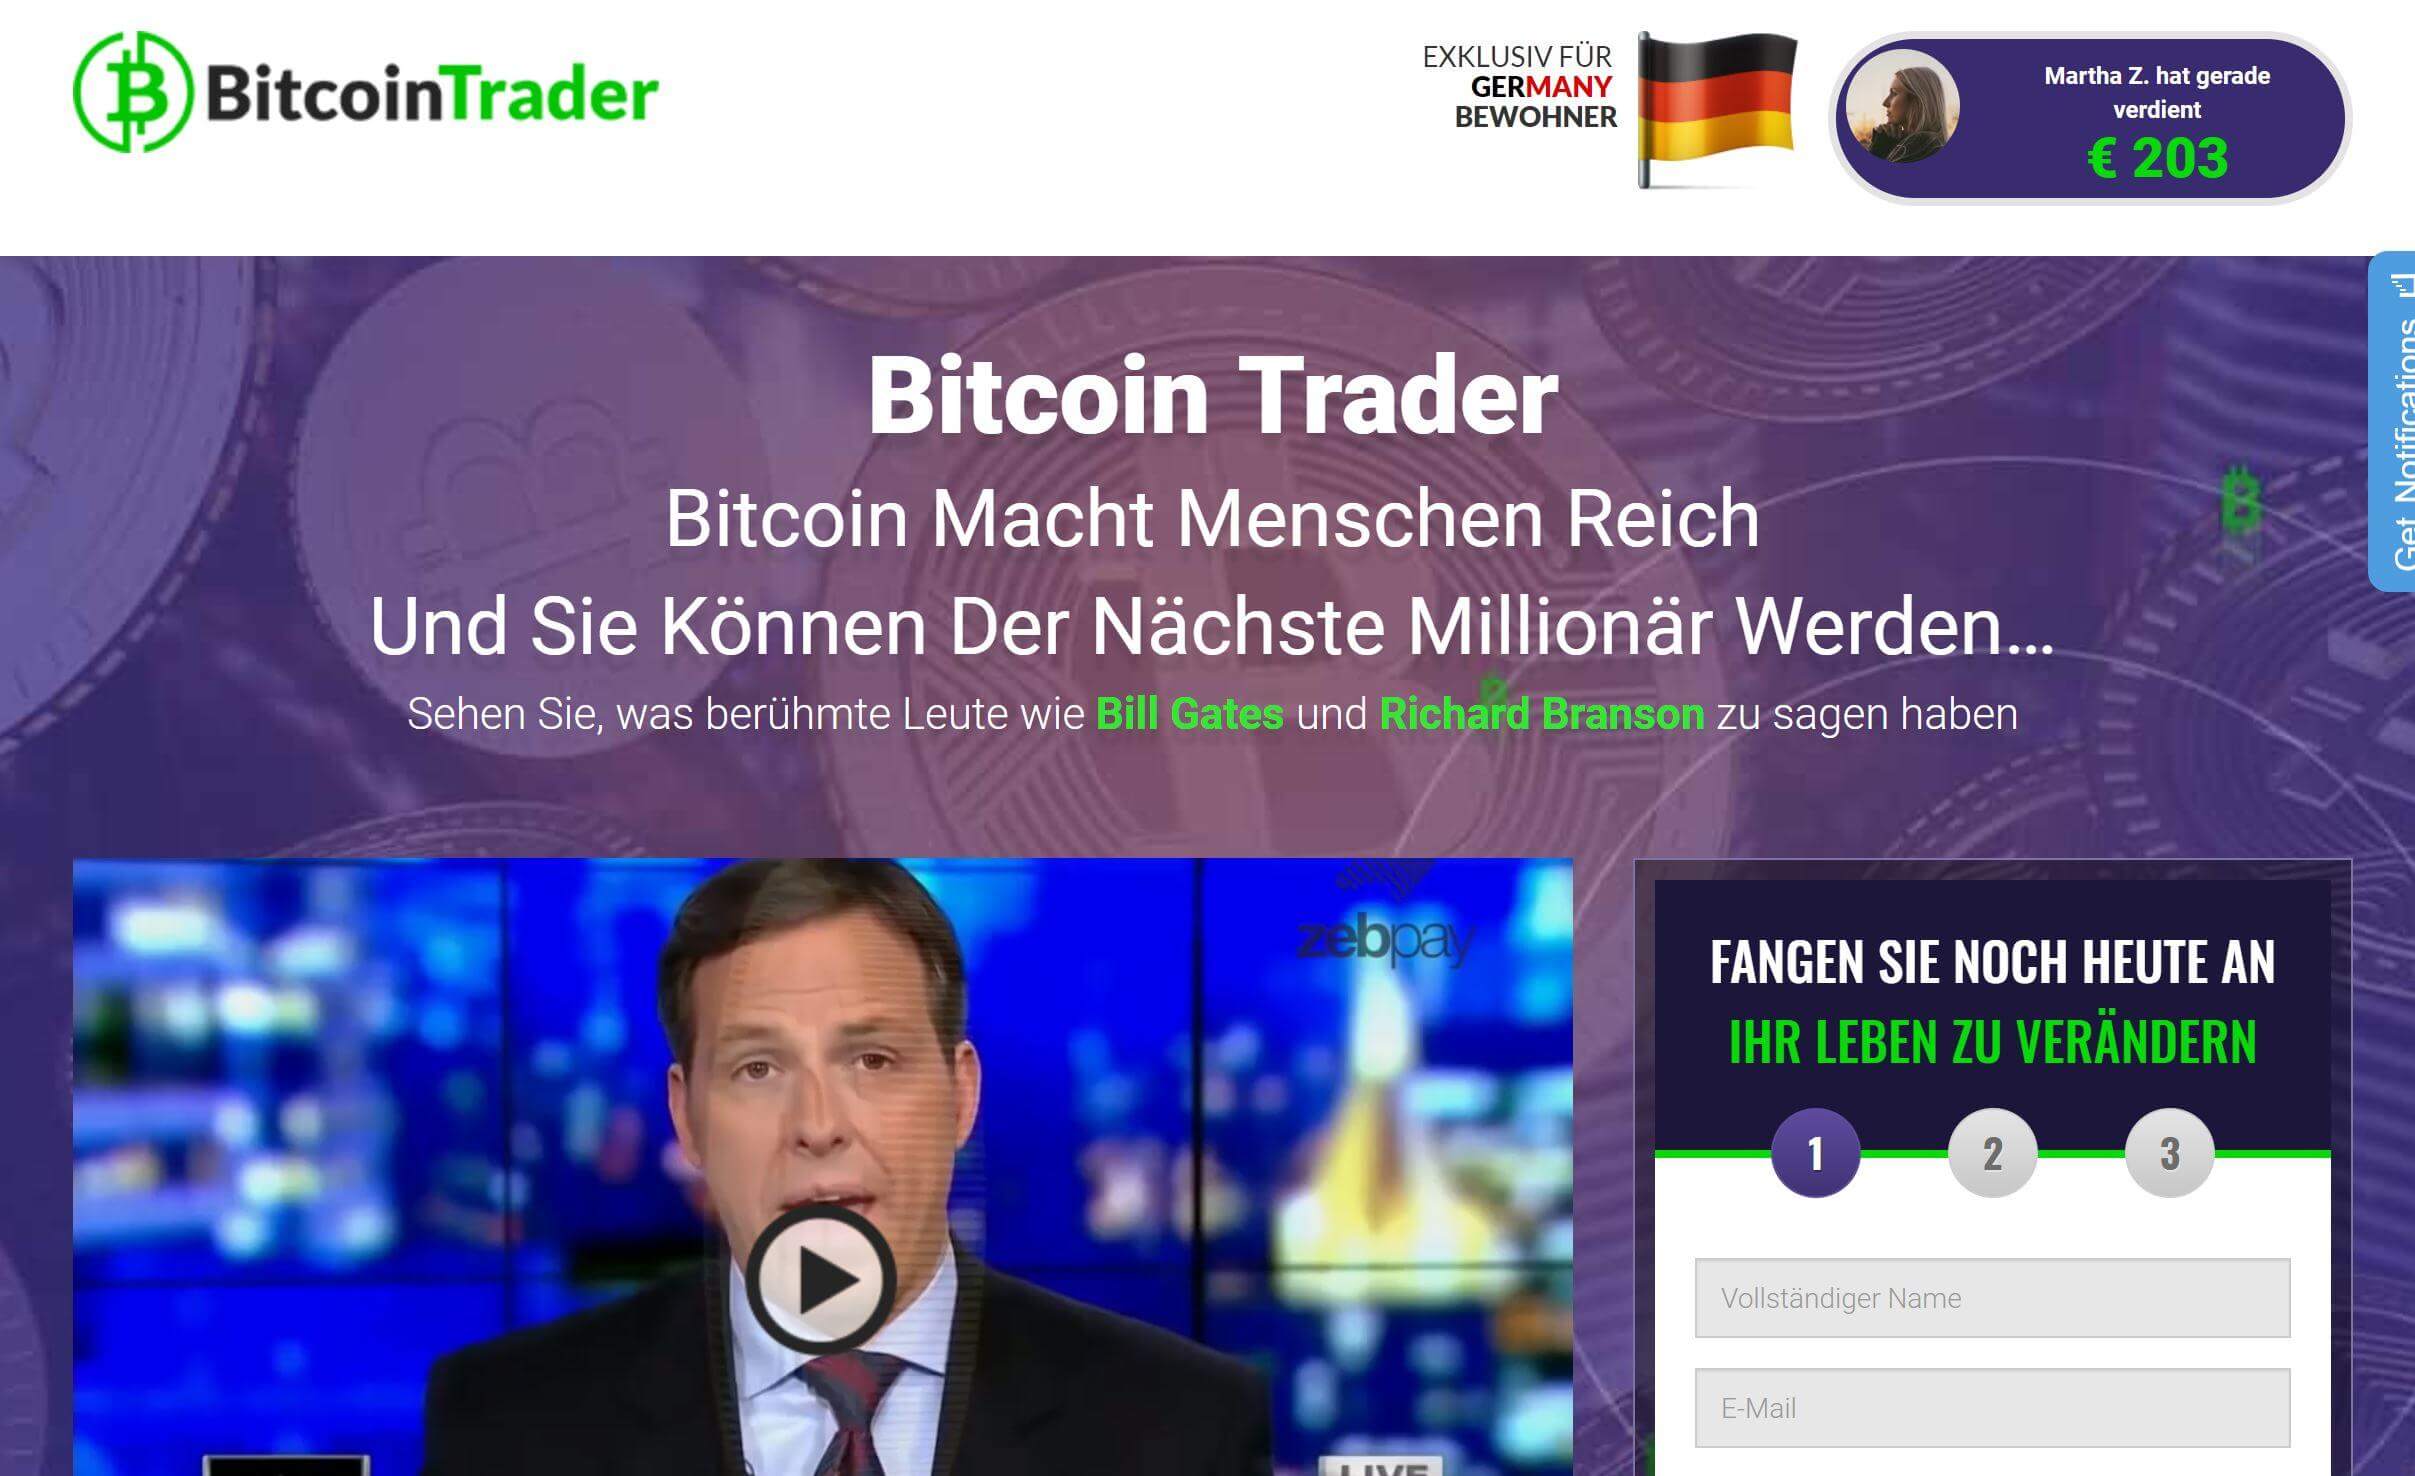 Hut Jemand Erfahrt mit Bitcoin Trader